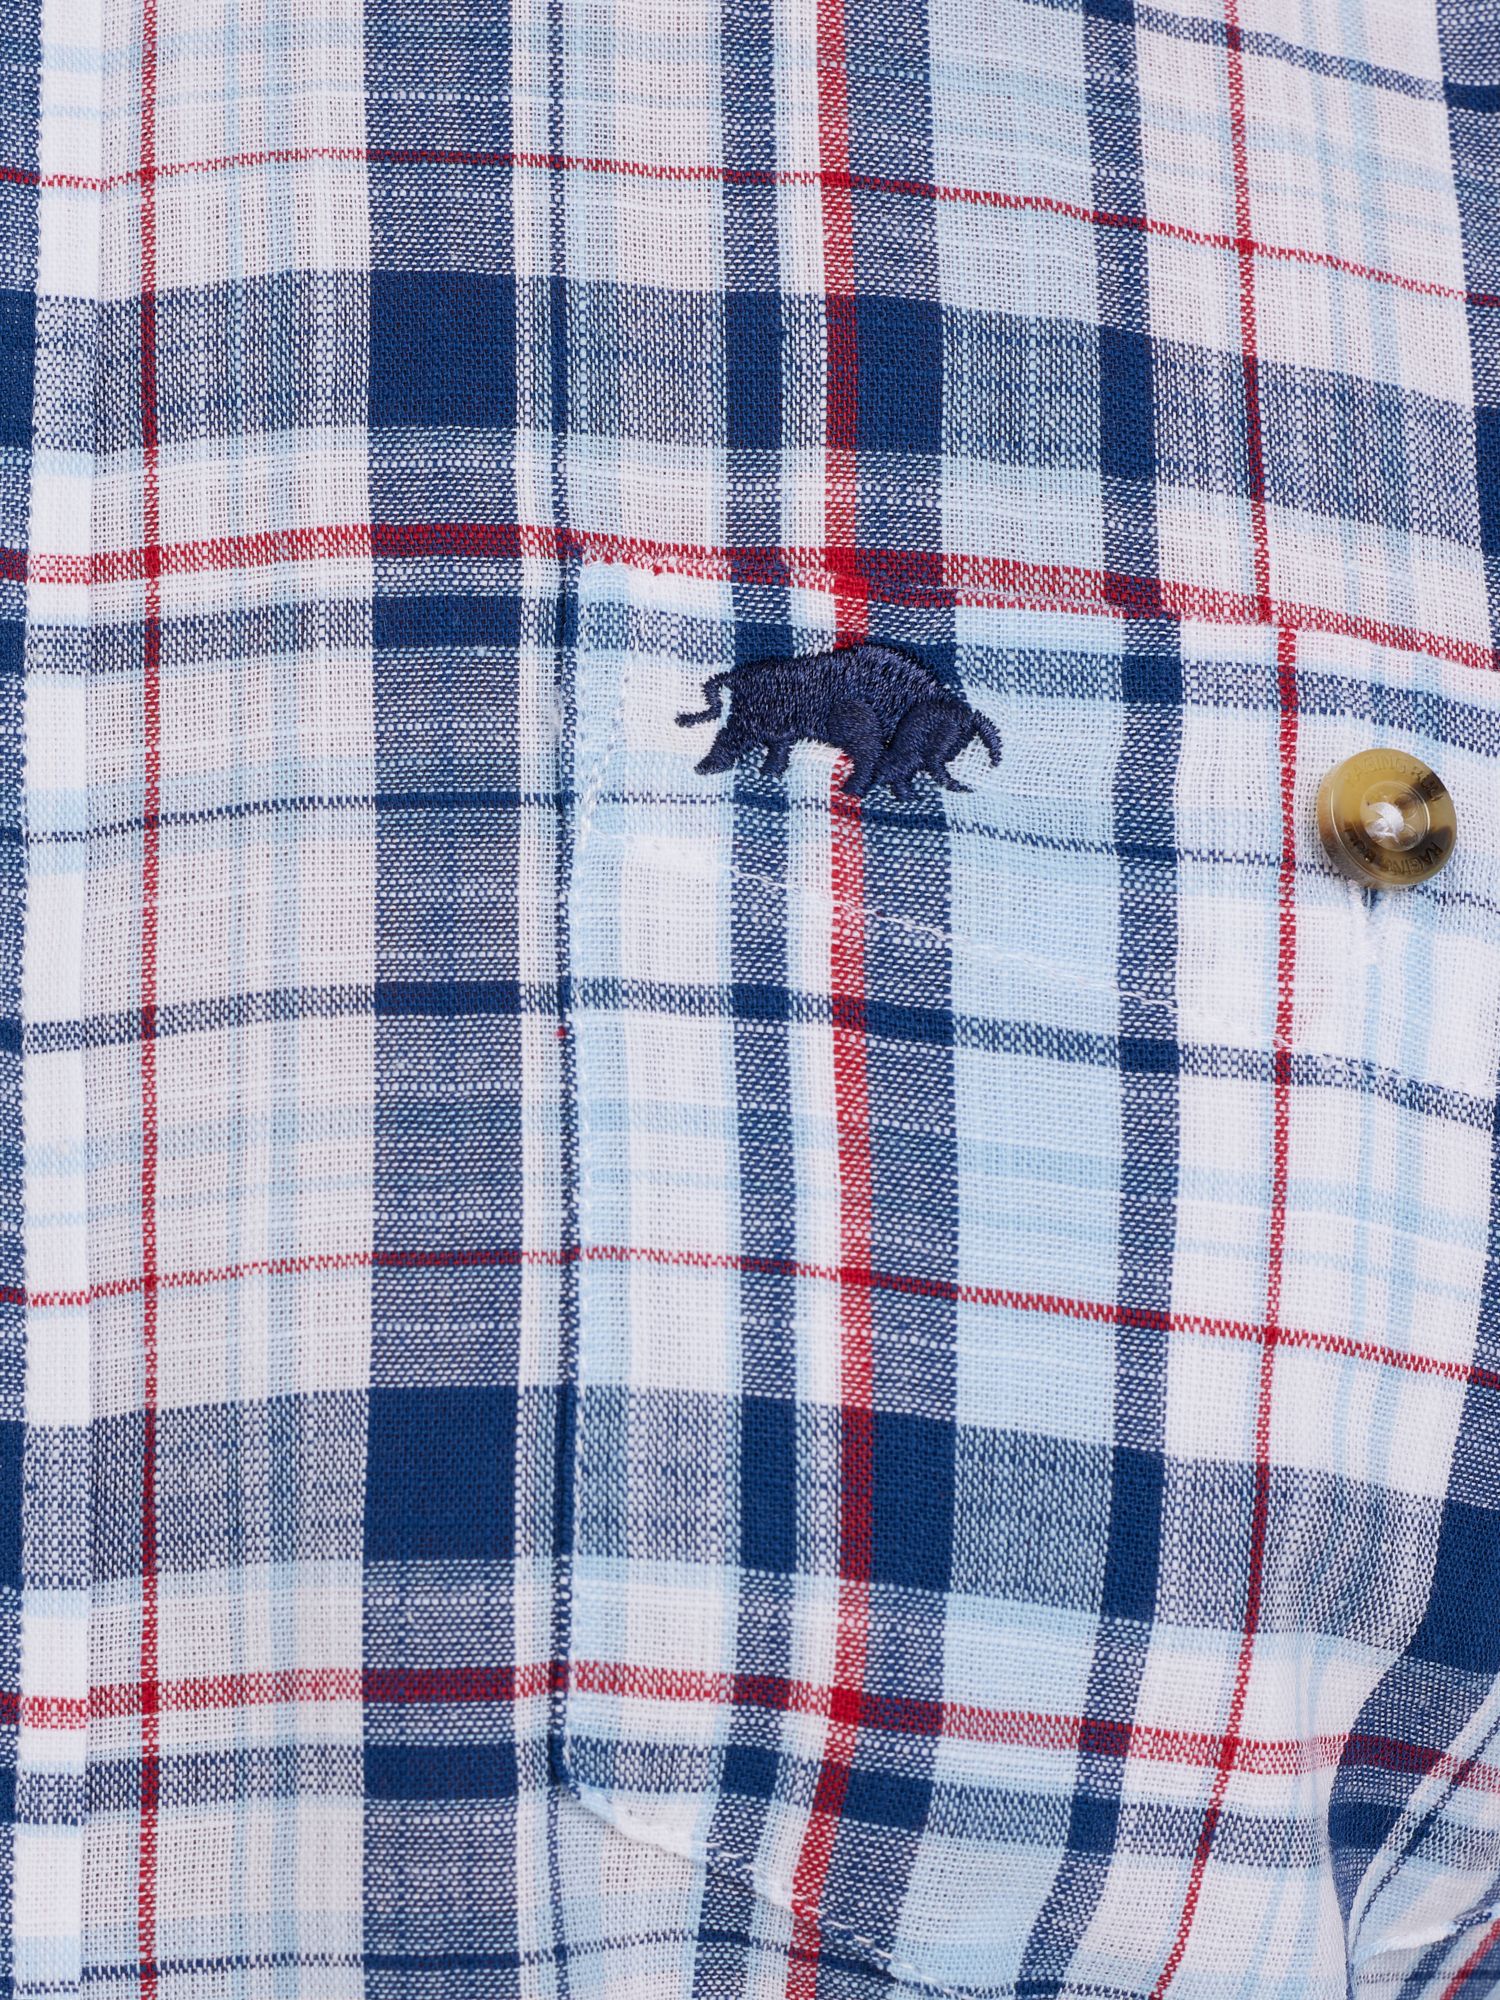 Raging Bull Short Sleeve Large Multi Check Linen Look Shirt, Navy/Multi, S